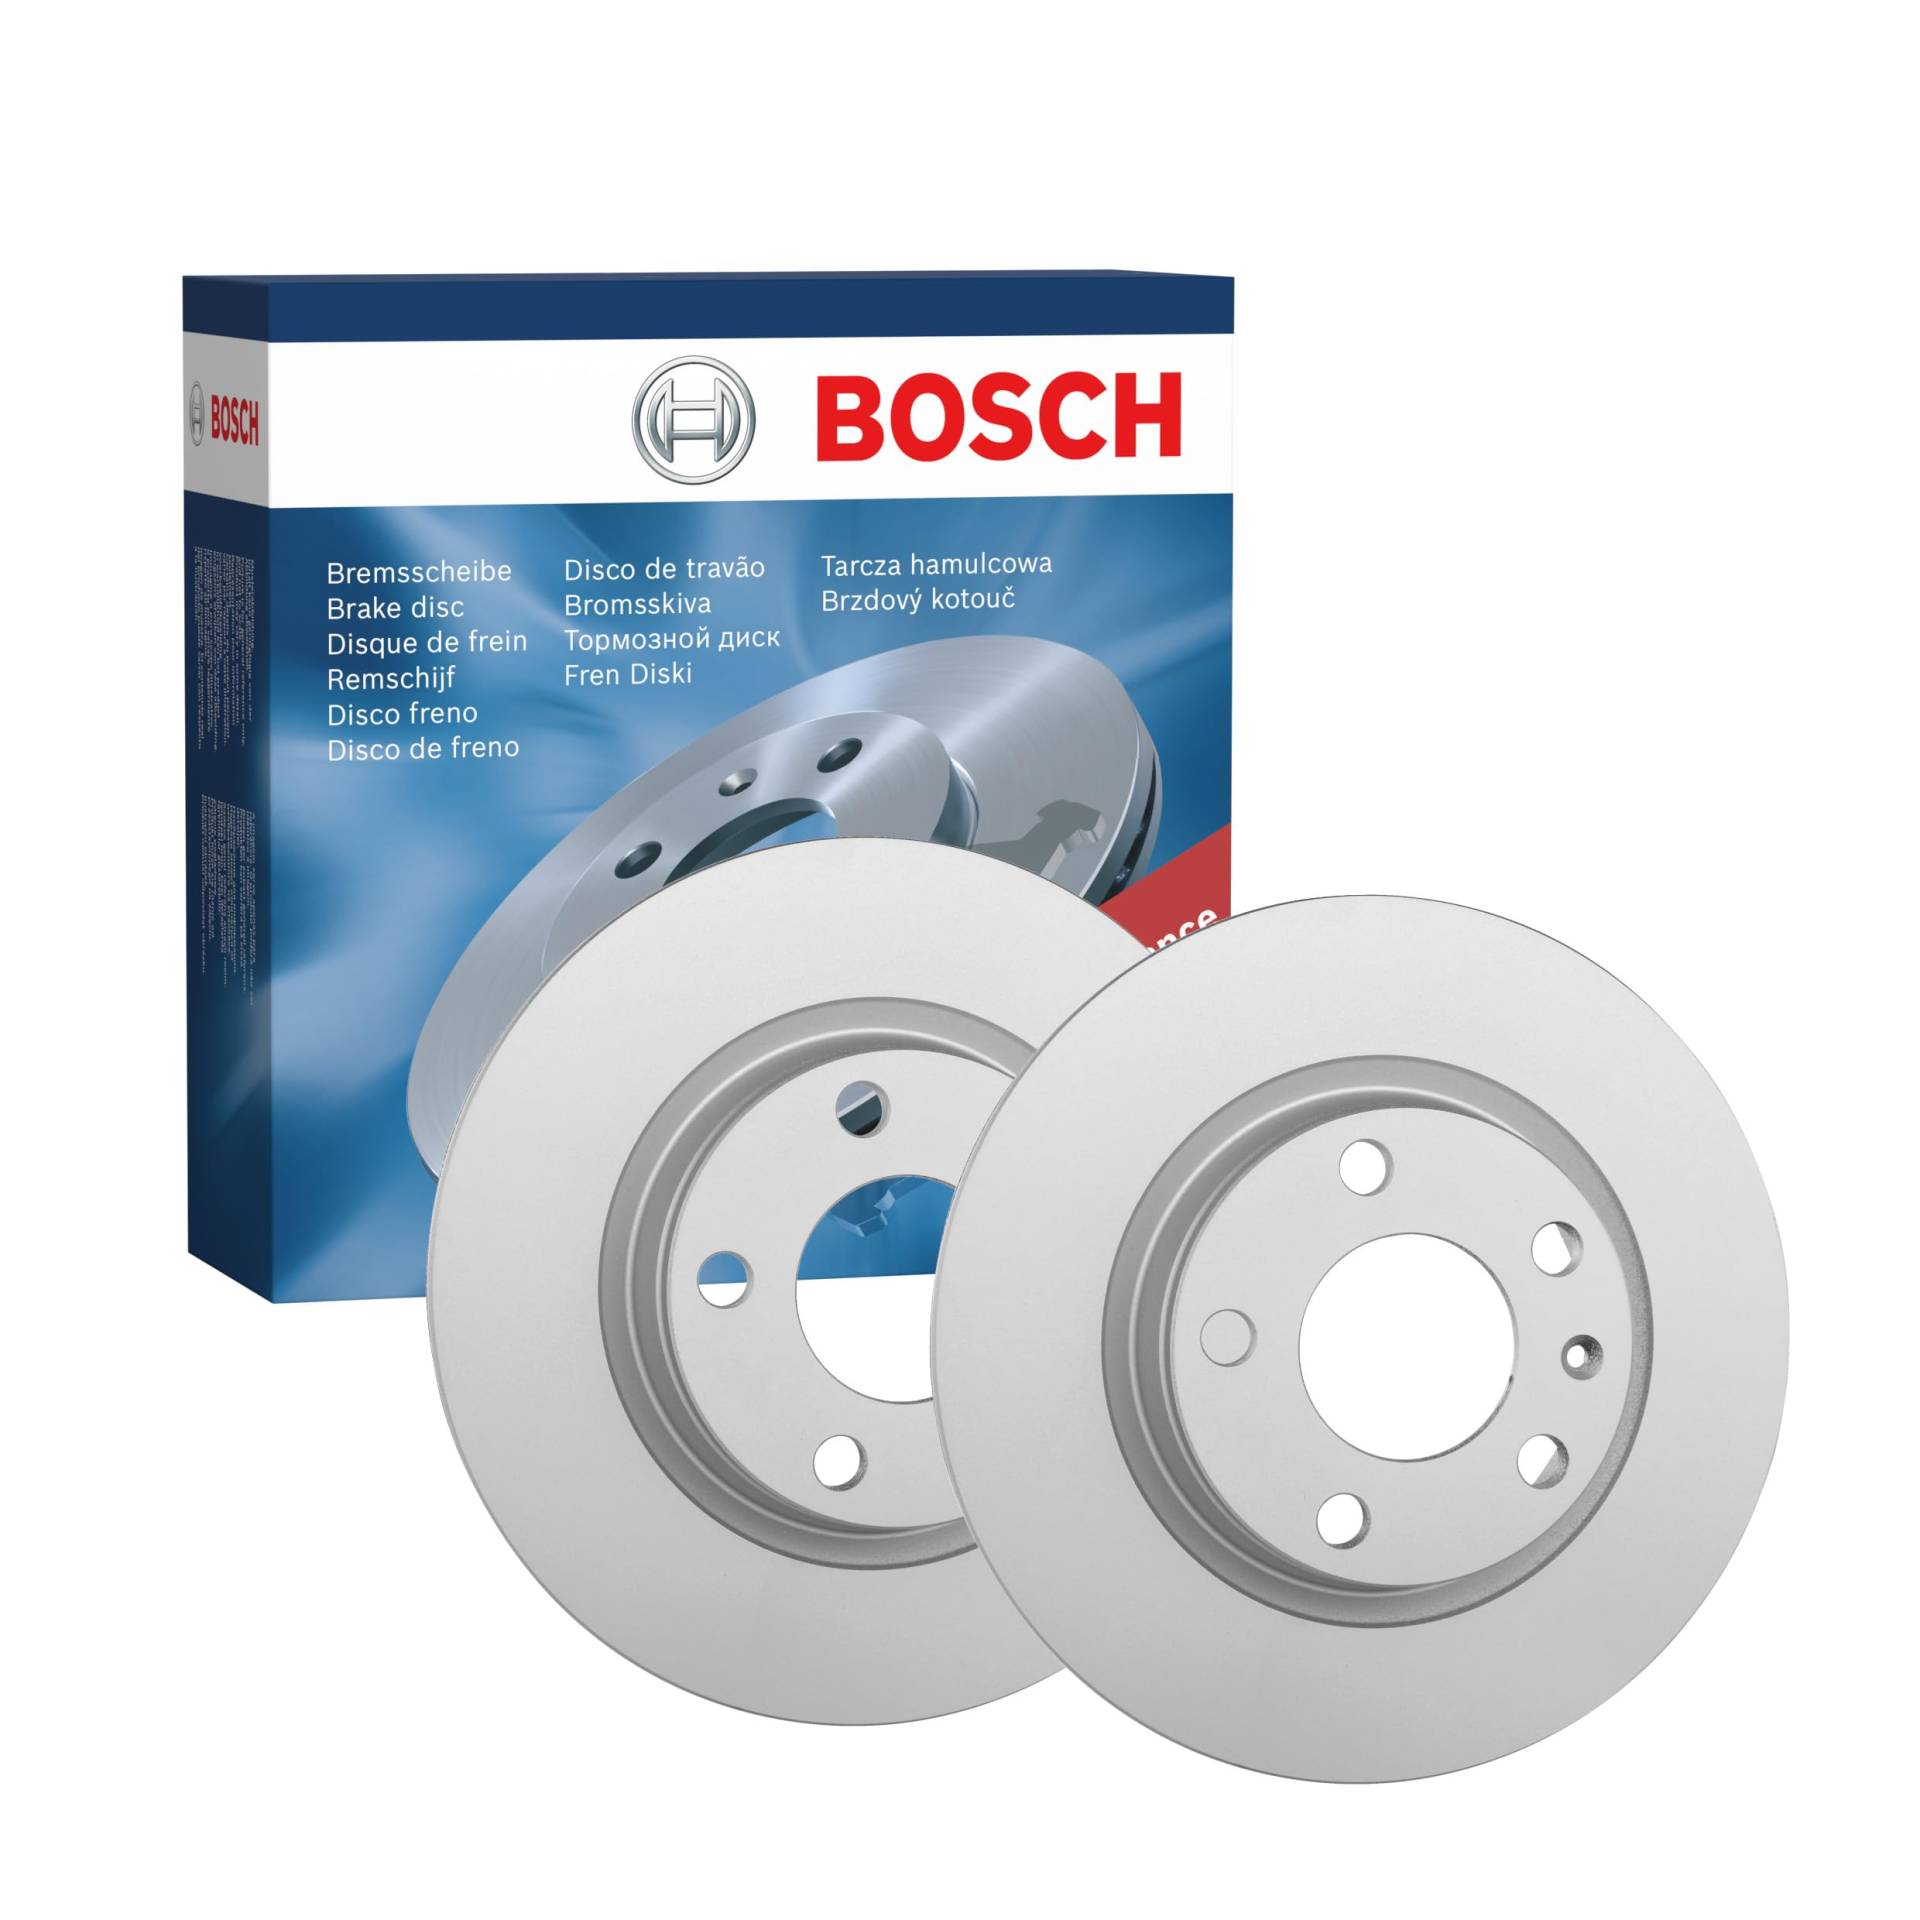 Bosch BD768 Bremsscheiben - Vorderachse - ECE-R90 Zertifizierung - zwei Bremsscheiben pro Set von Bosch Automotive